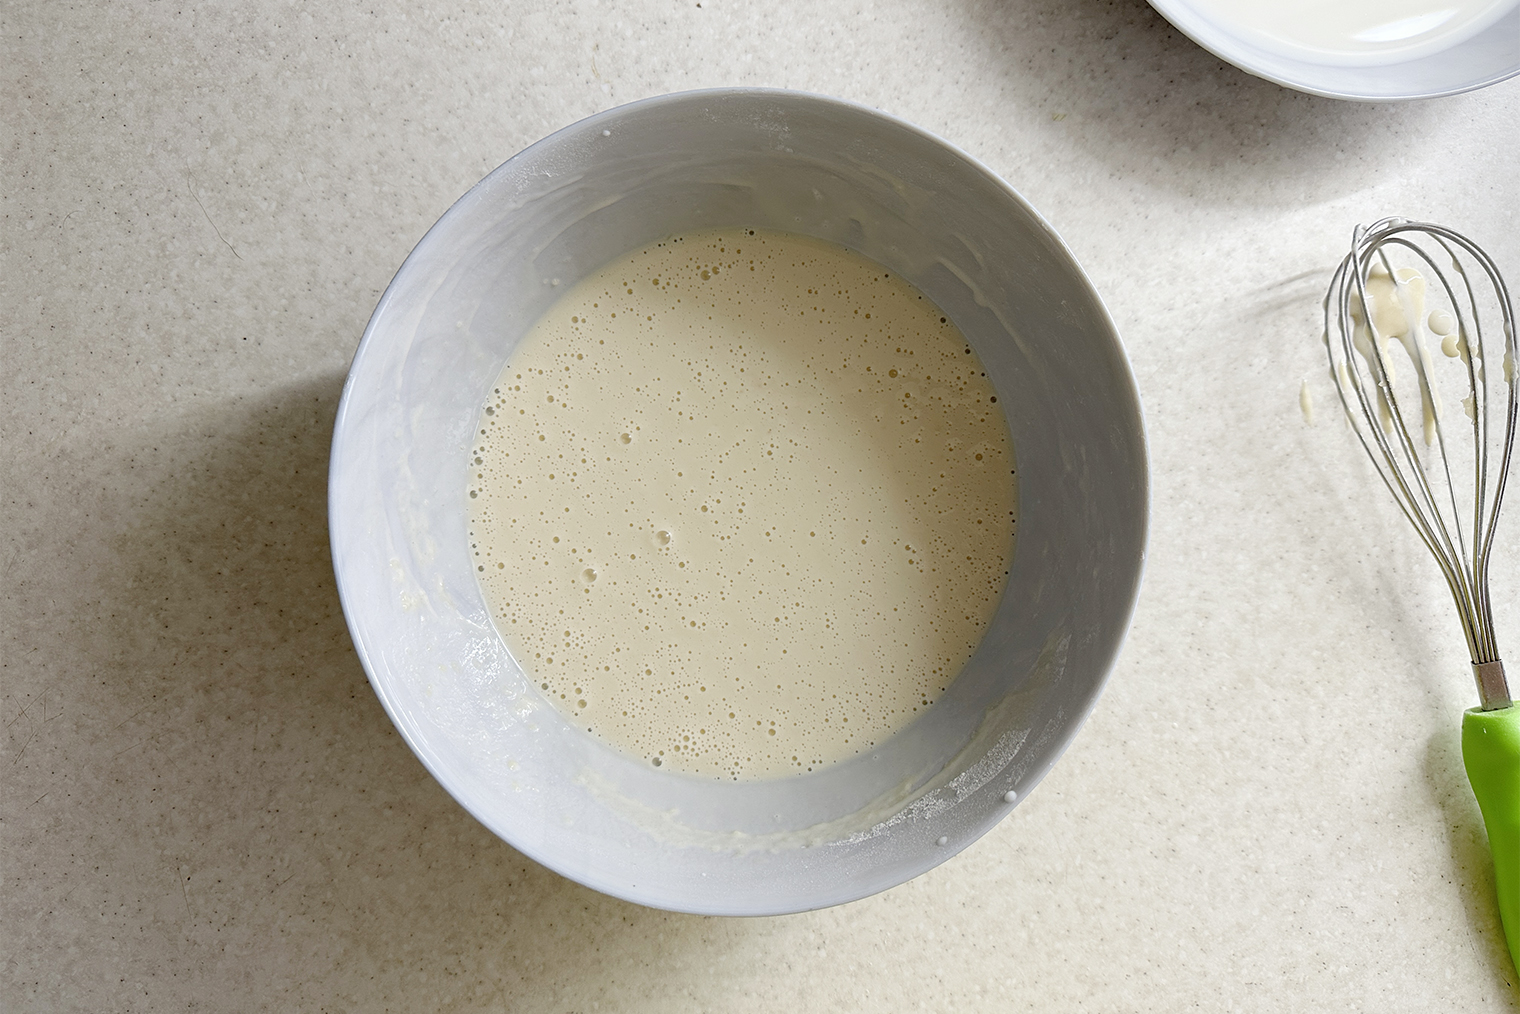 Это тесто после добавления второй порции молока. Оно стало более жидким и бледно-бежевого цвета